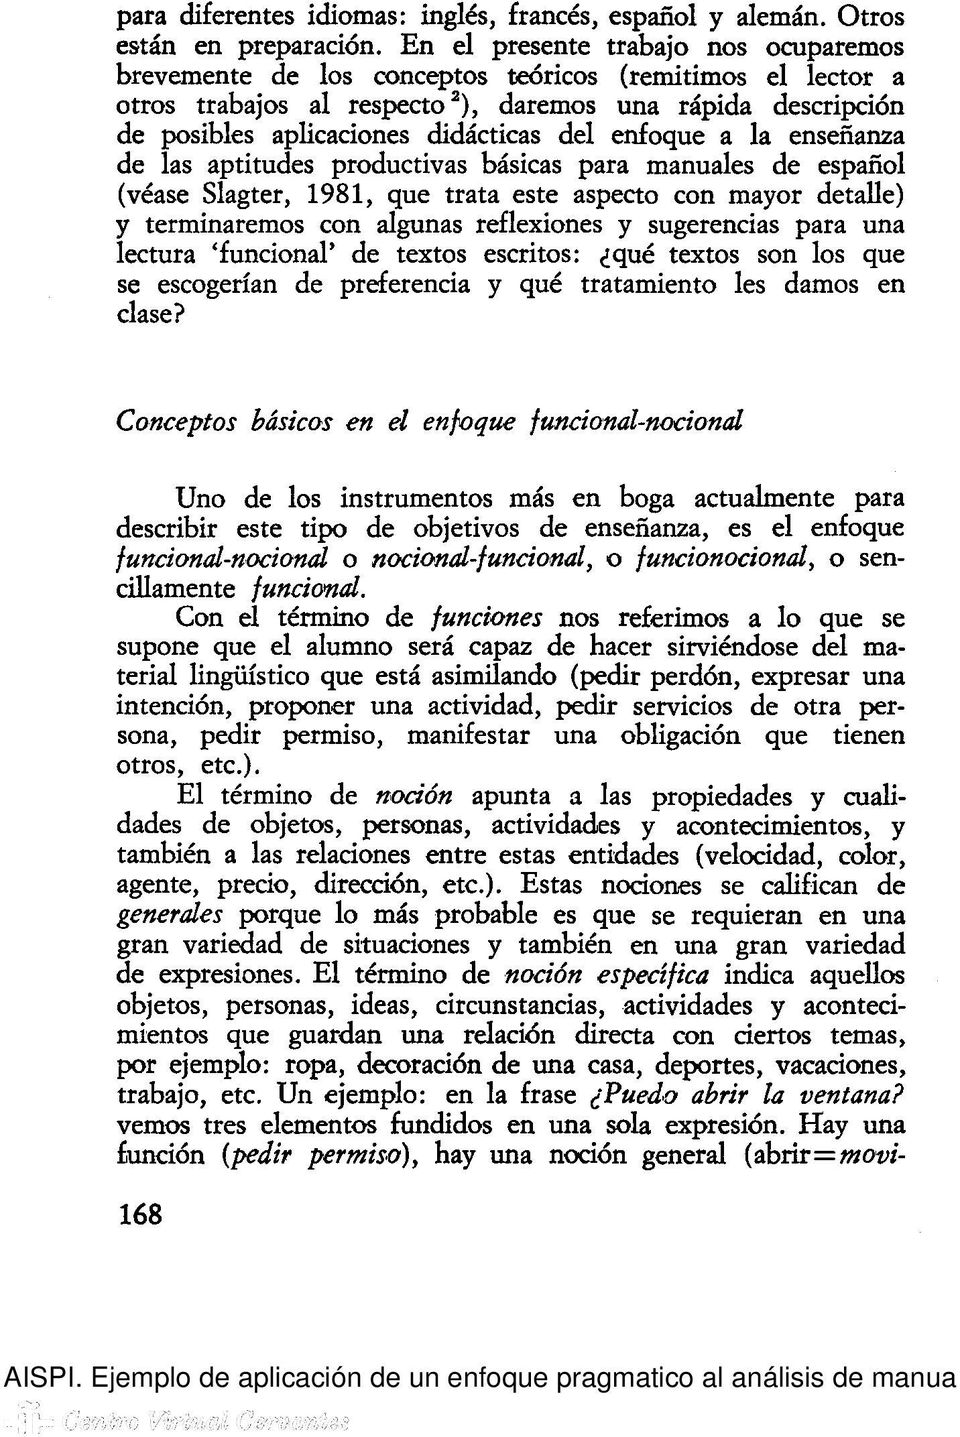 del enfoque a la enseñanza de las aptitudes productivas básicas para manuales de español (véase Slagter, 1981, que trata este aspecto con mayor detalle) y terminaremos con algunas reflexiones y